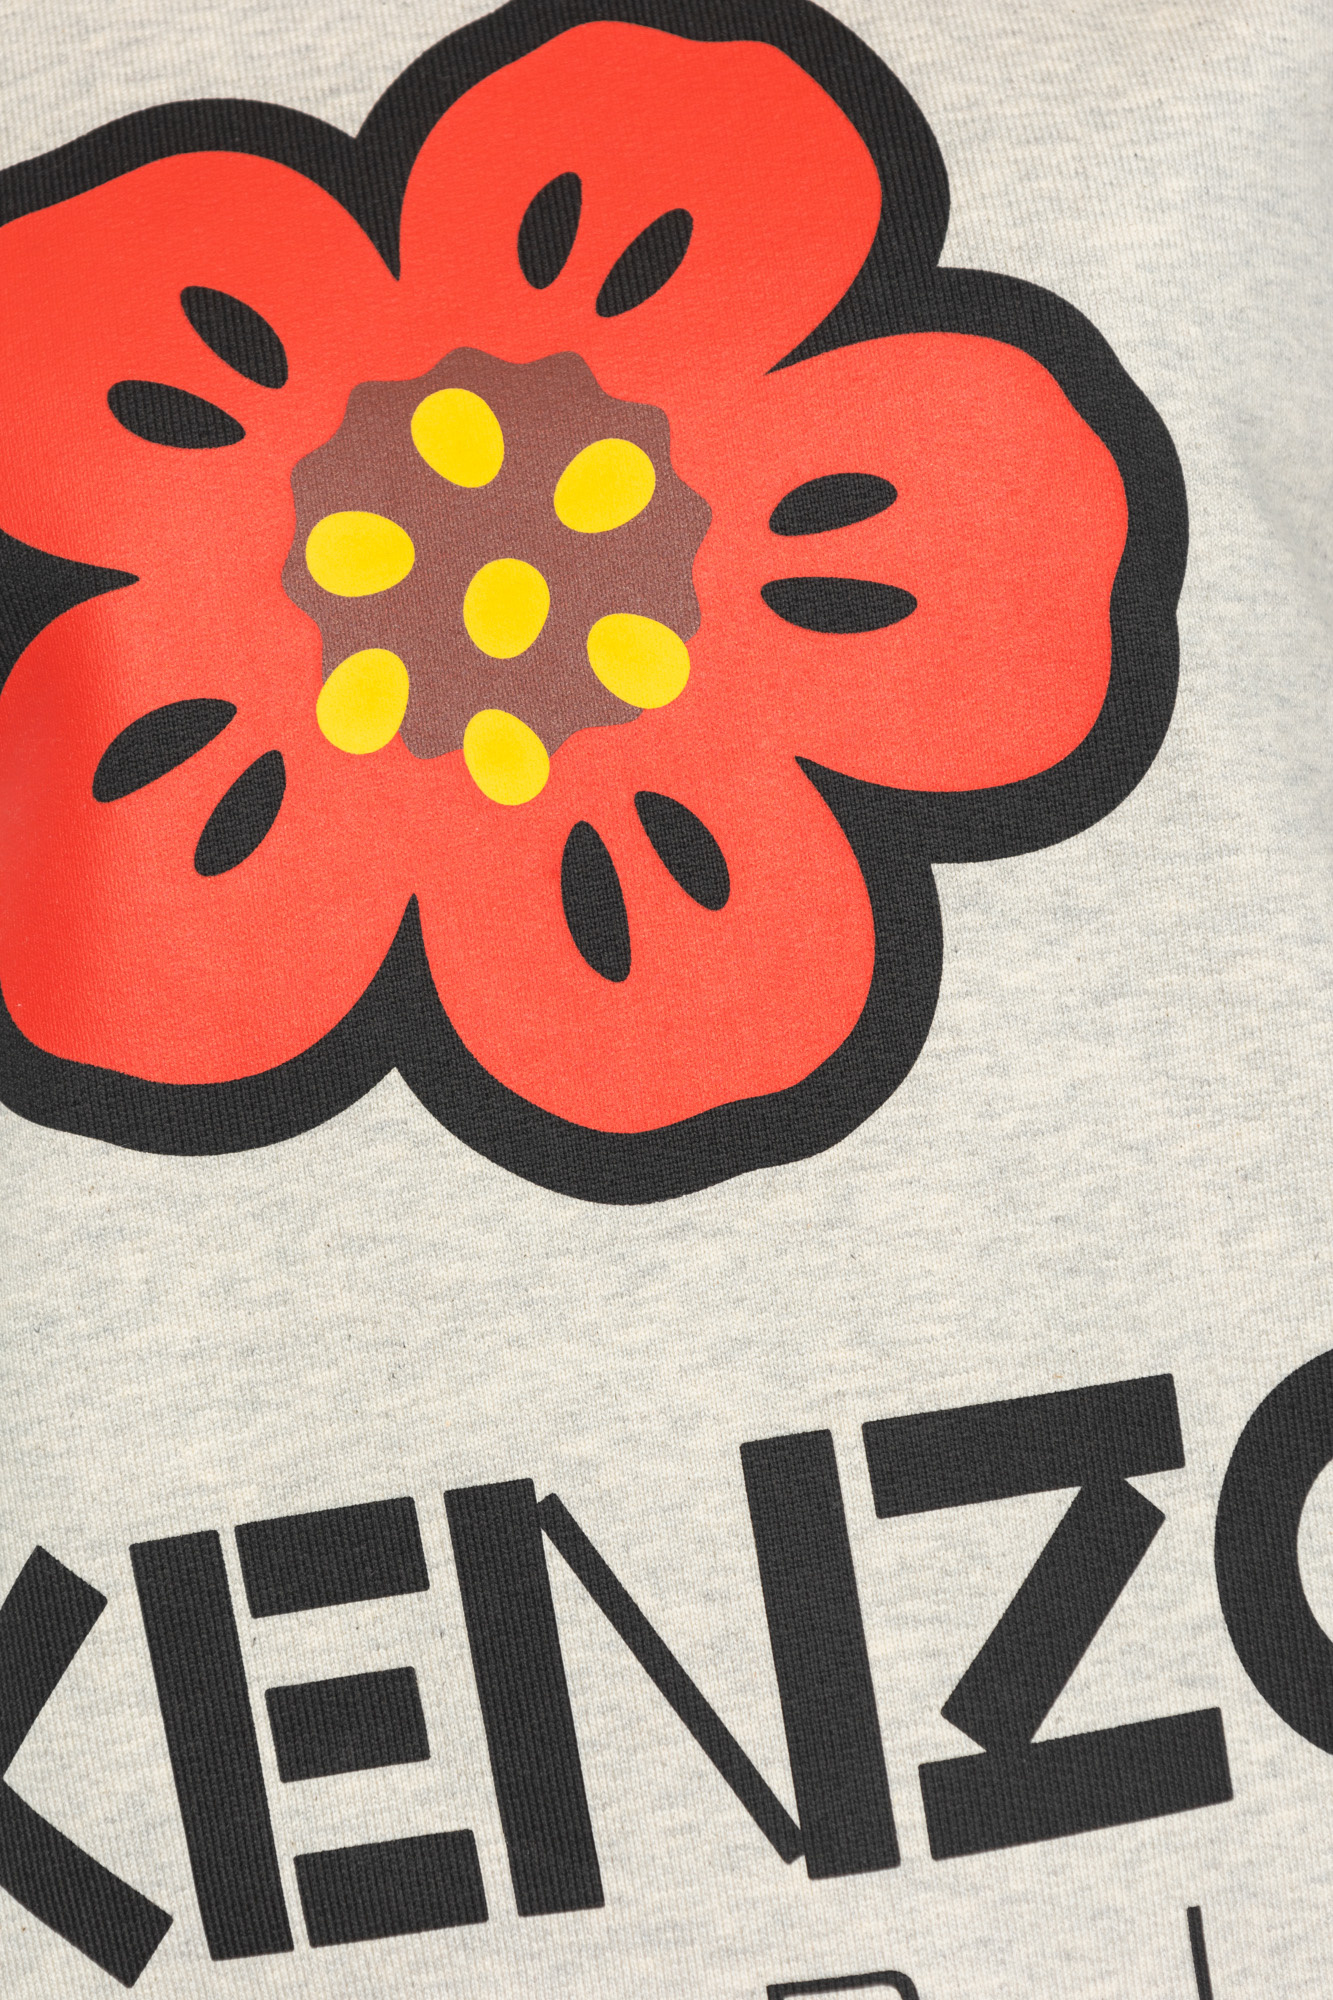 Kenzo loose sweatshirt with logo